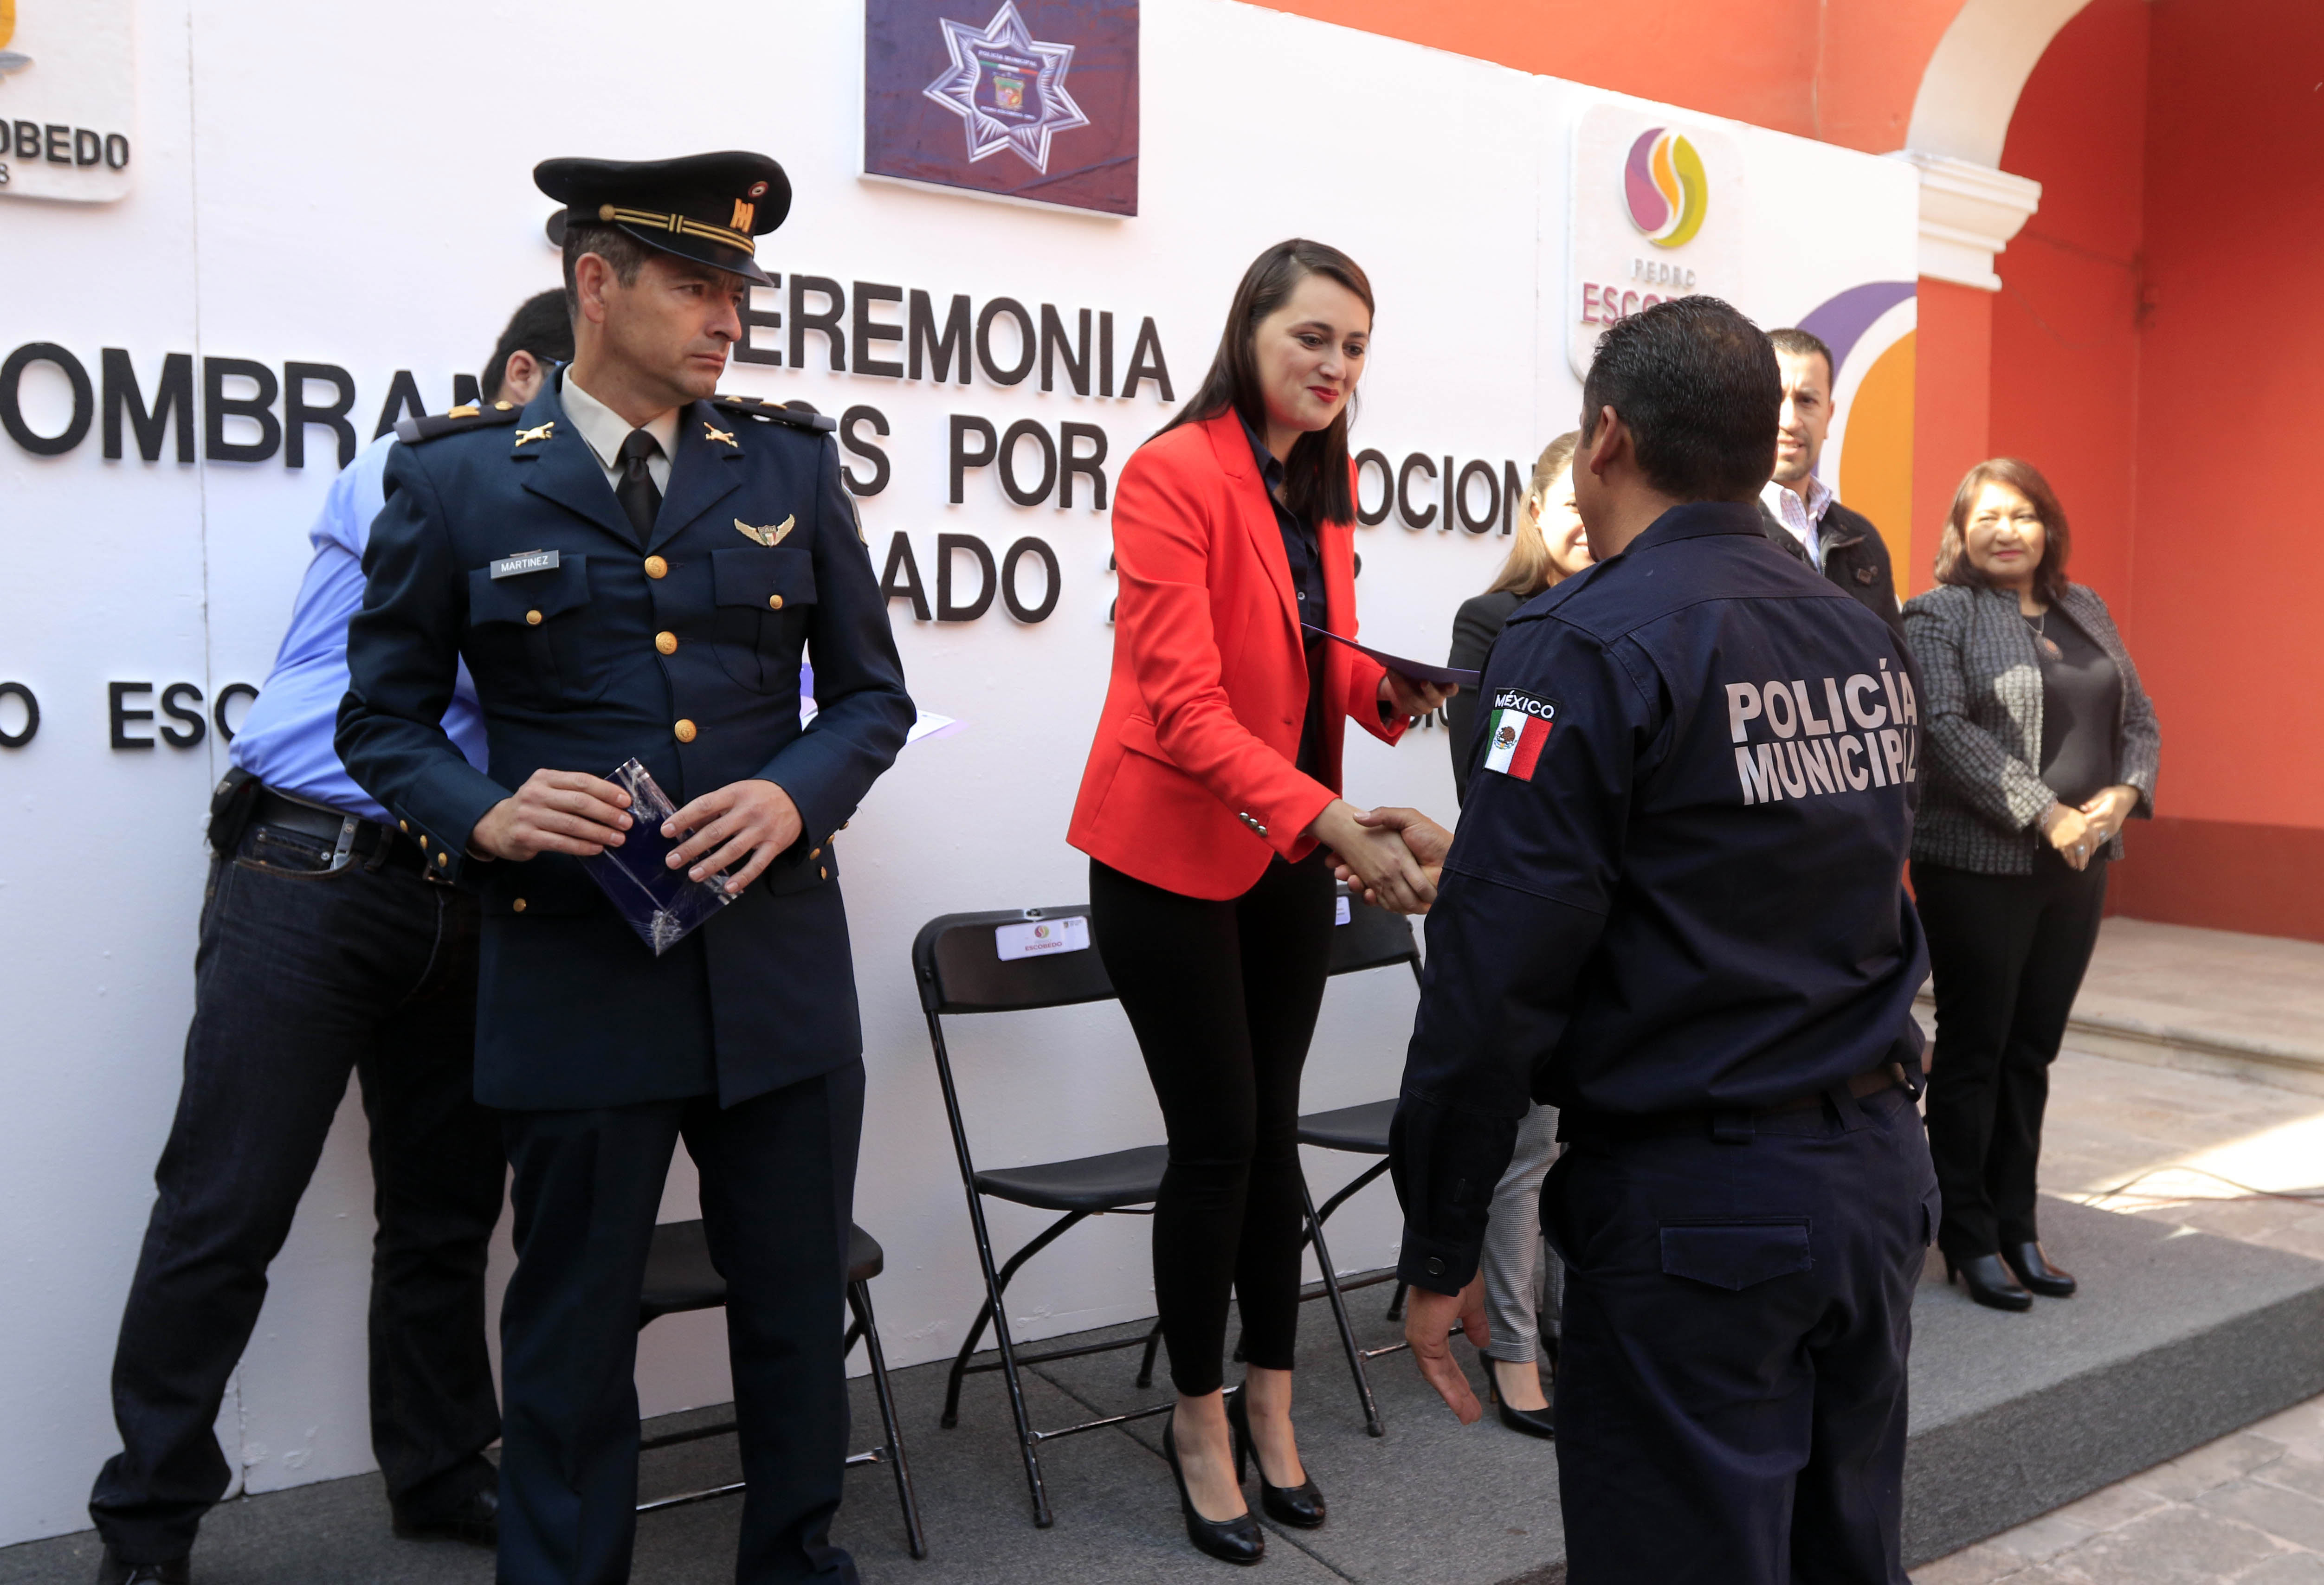 Pedro Escobedo, Policías, Demarcación, Séptimo Regimiento, Ejército Mexicano, Seguridad Interior, Congreso de la Unión, Ciudadanos